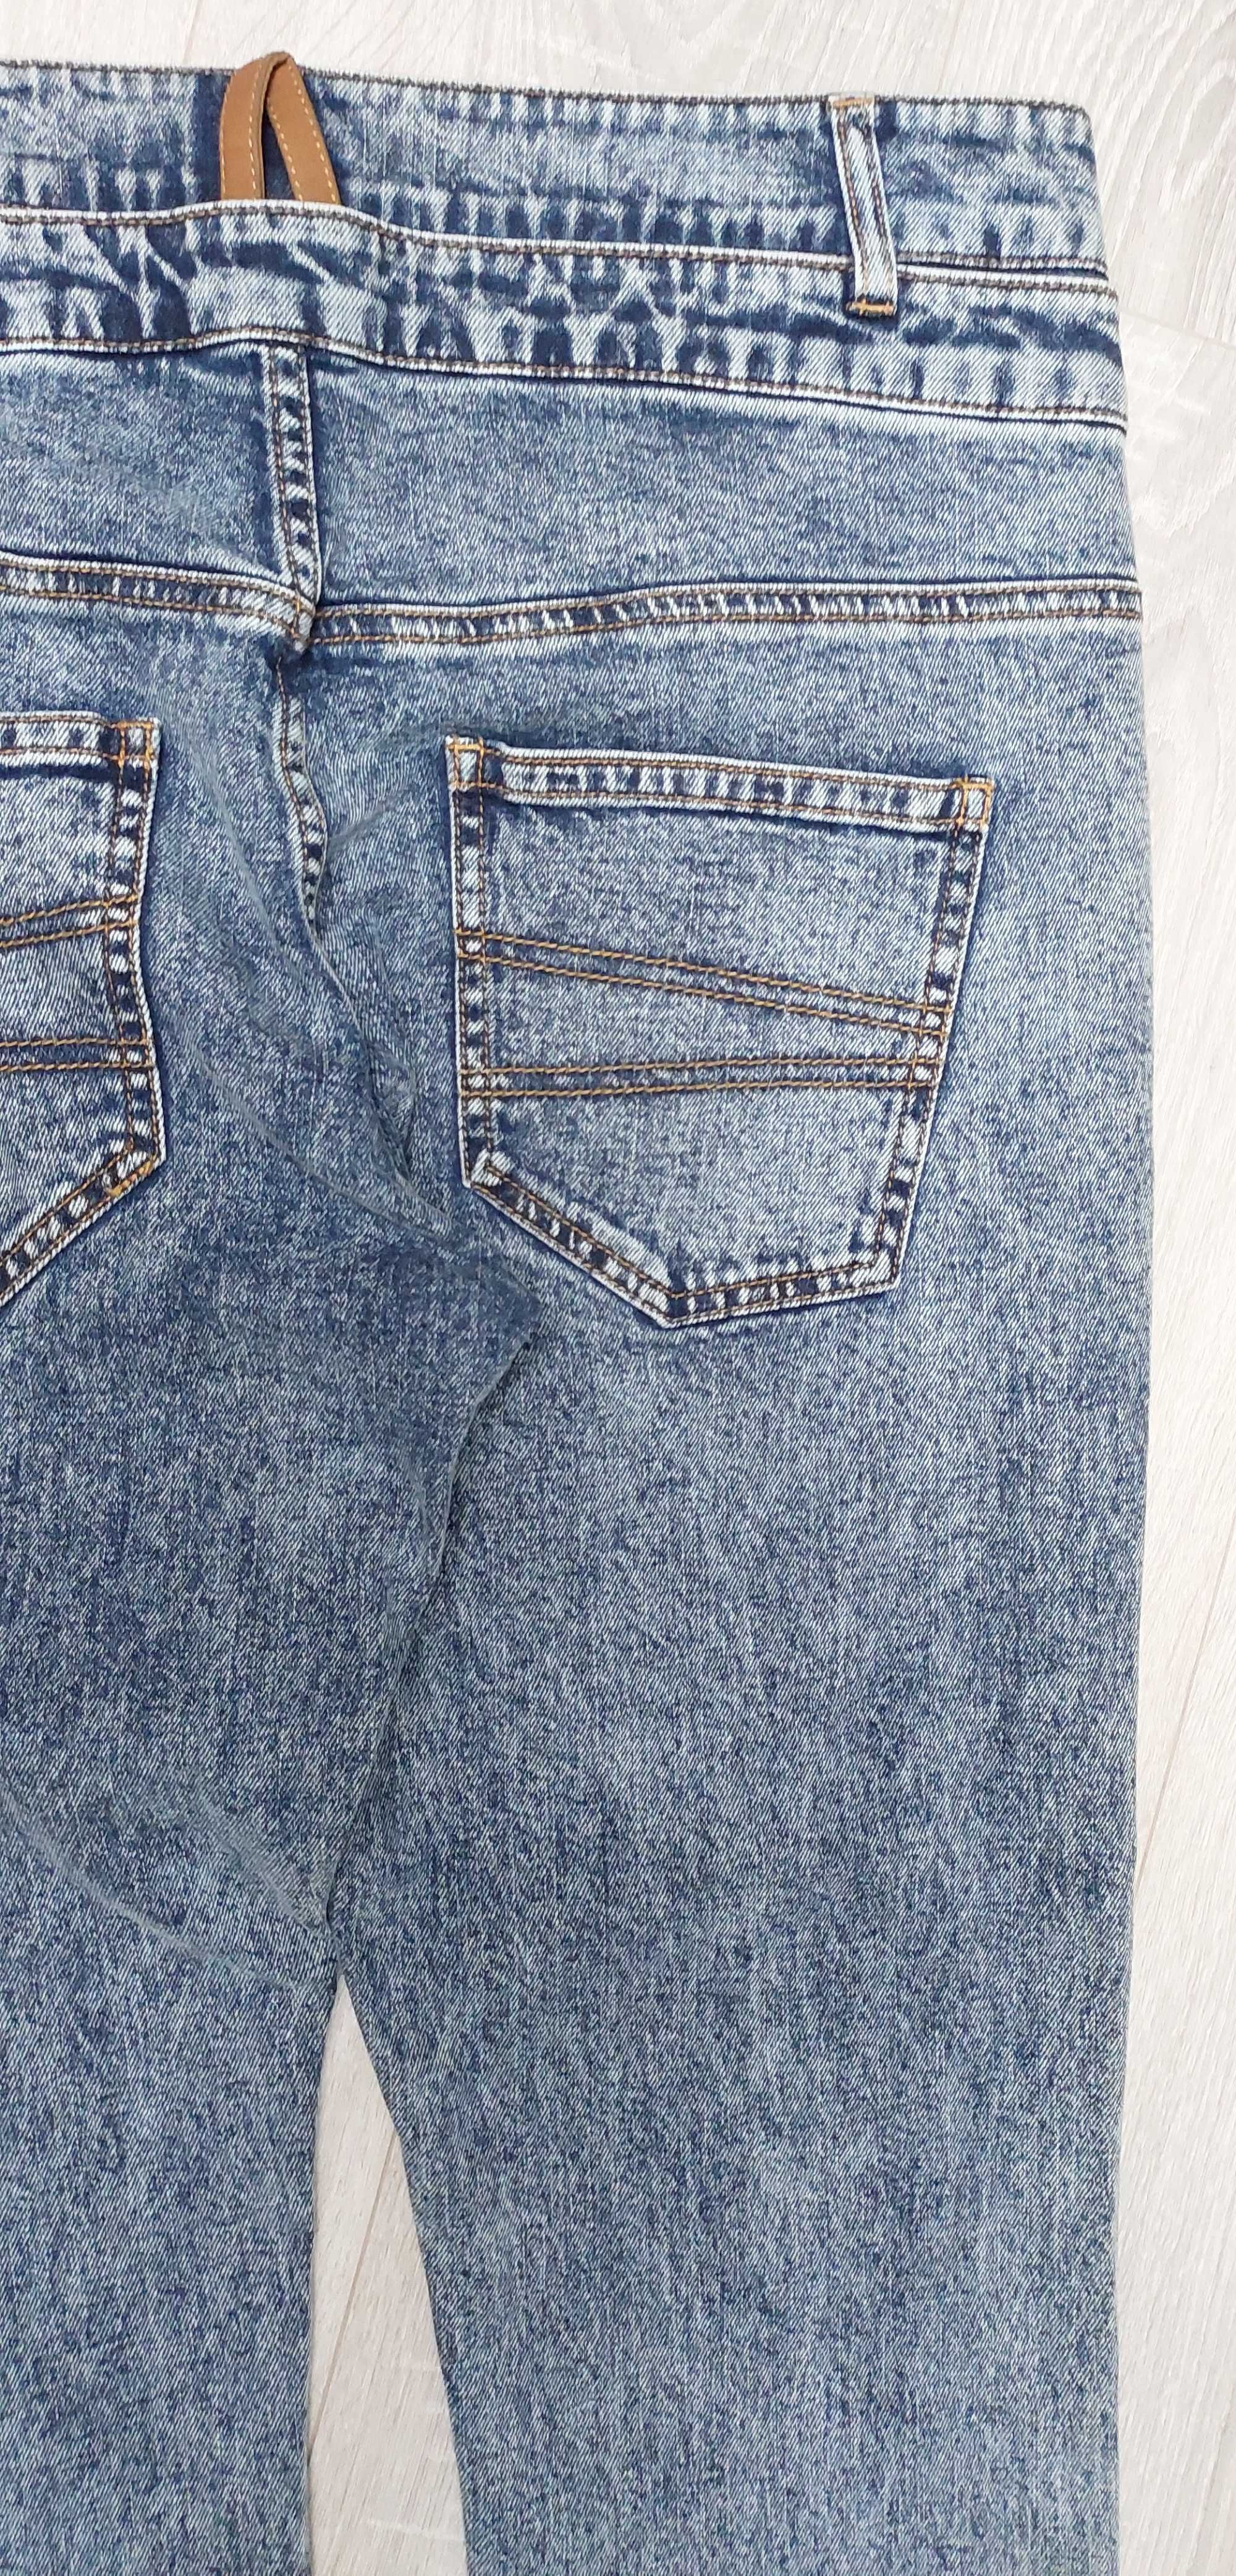 Spodnie jeansowe DESIGUAL, R. 34